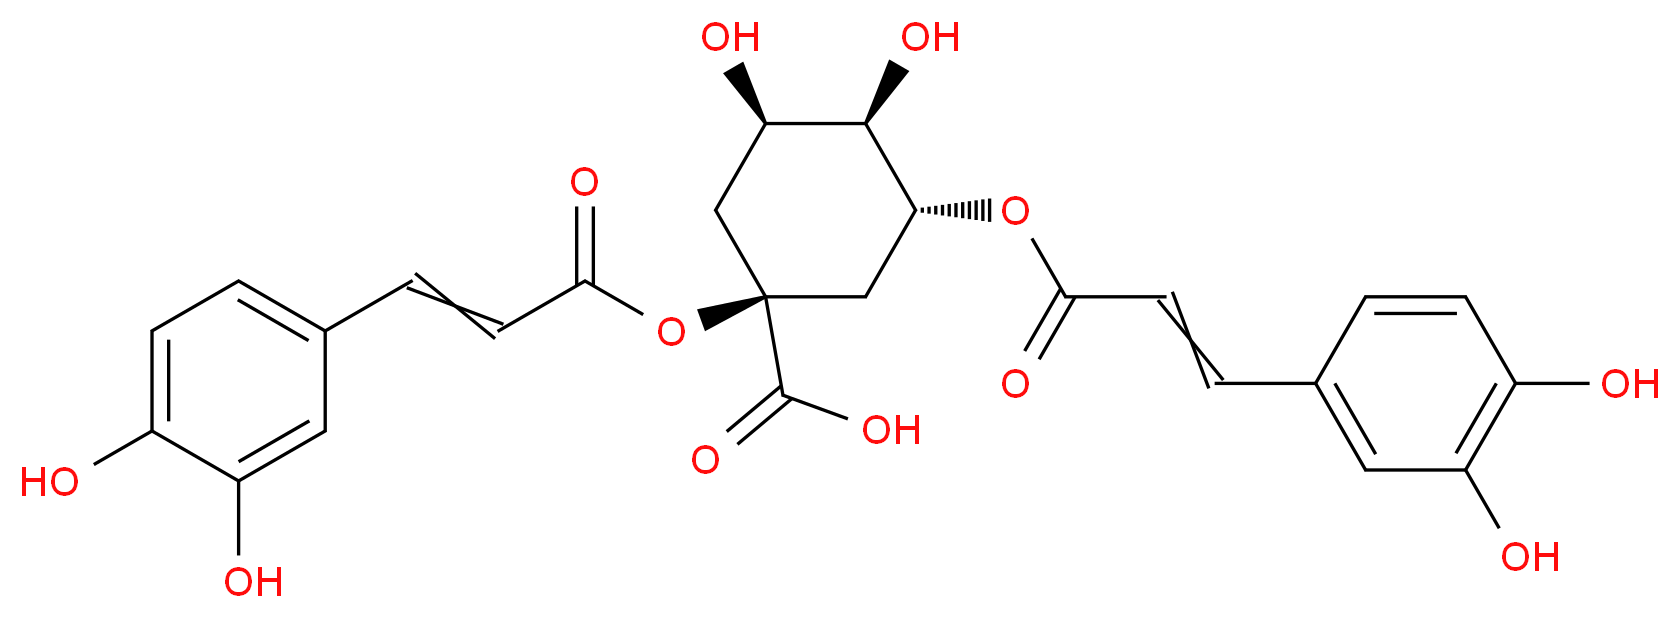 19870-46-3 molecular structure